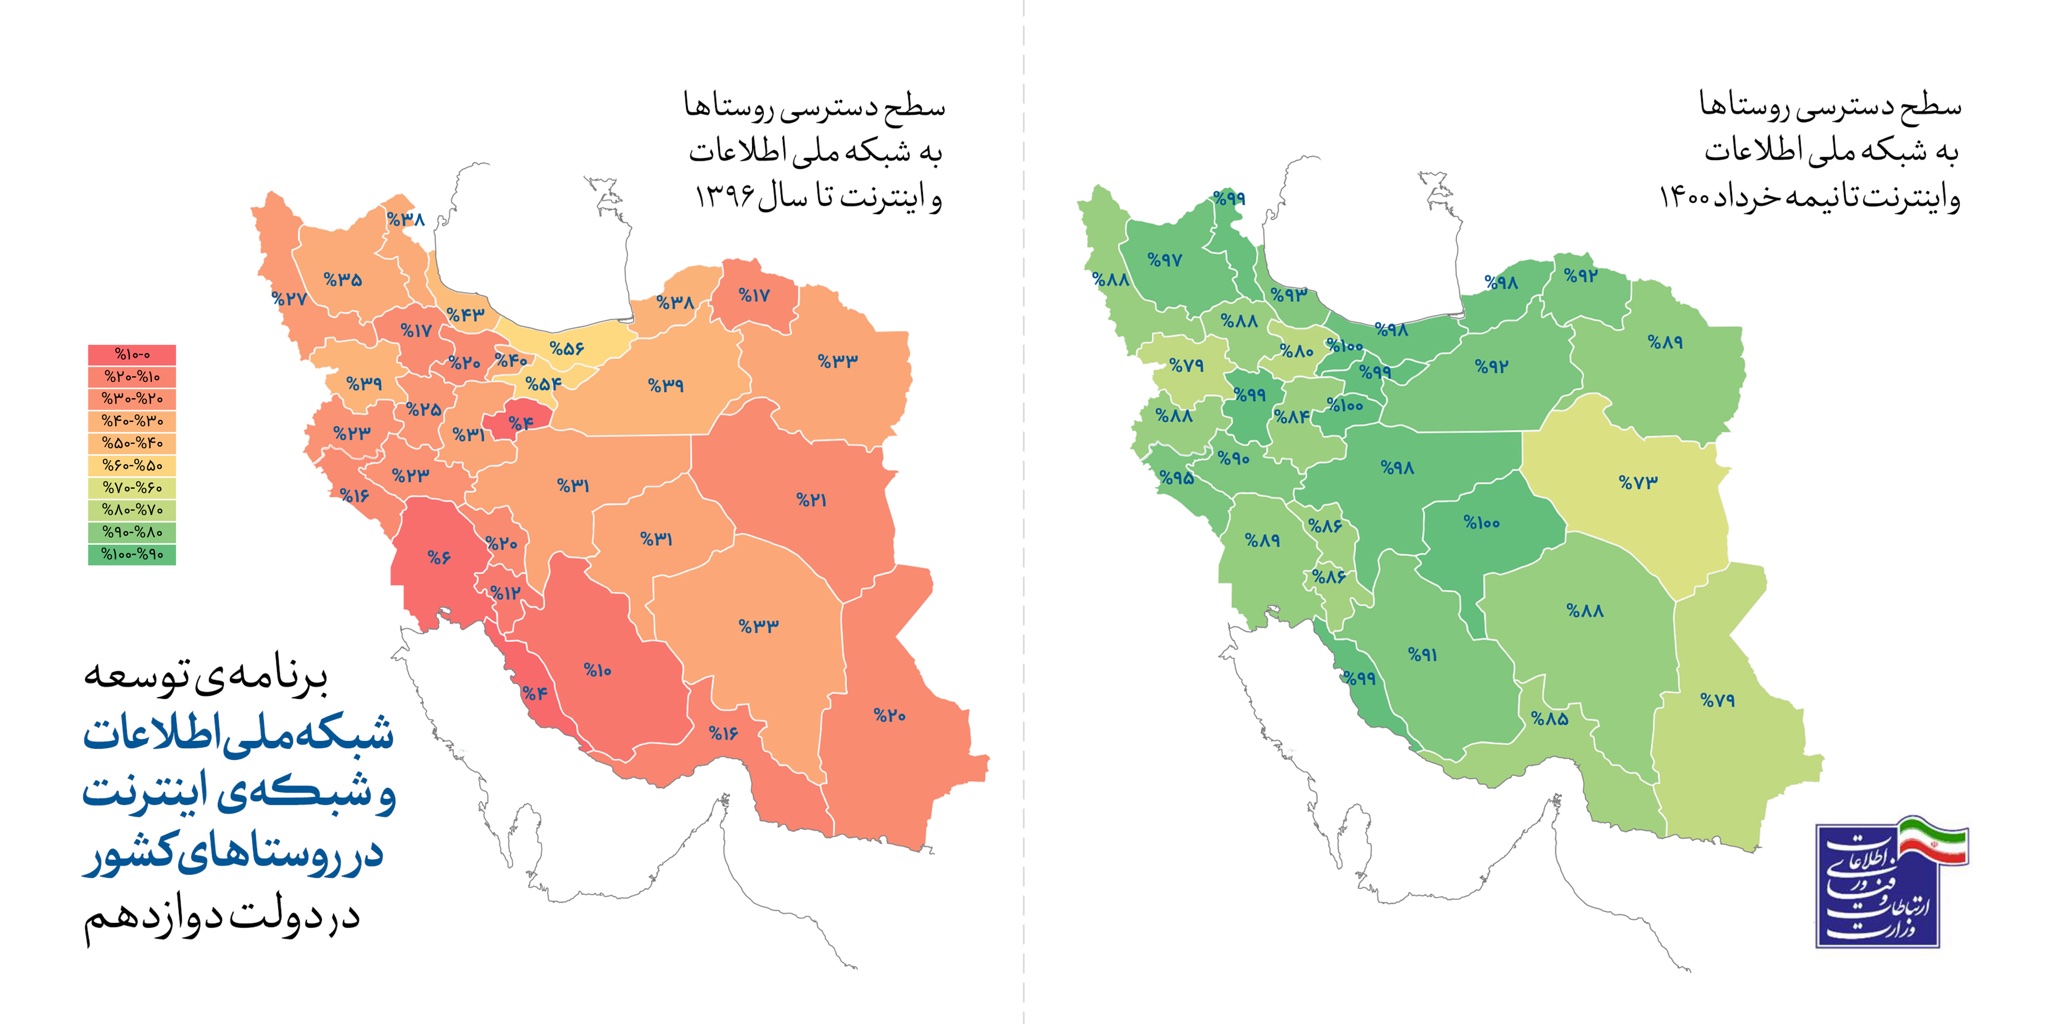 آذری جهرمی: ۹۸/۵ درصد روستاییان و ۱۰۰ درصد شهروندان ایرانی به اینترنت متصل هستند